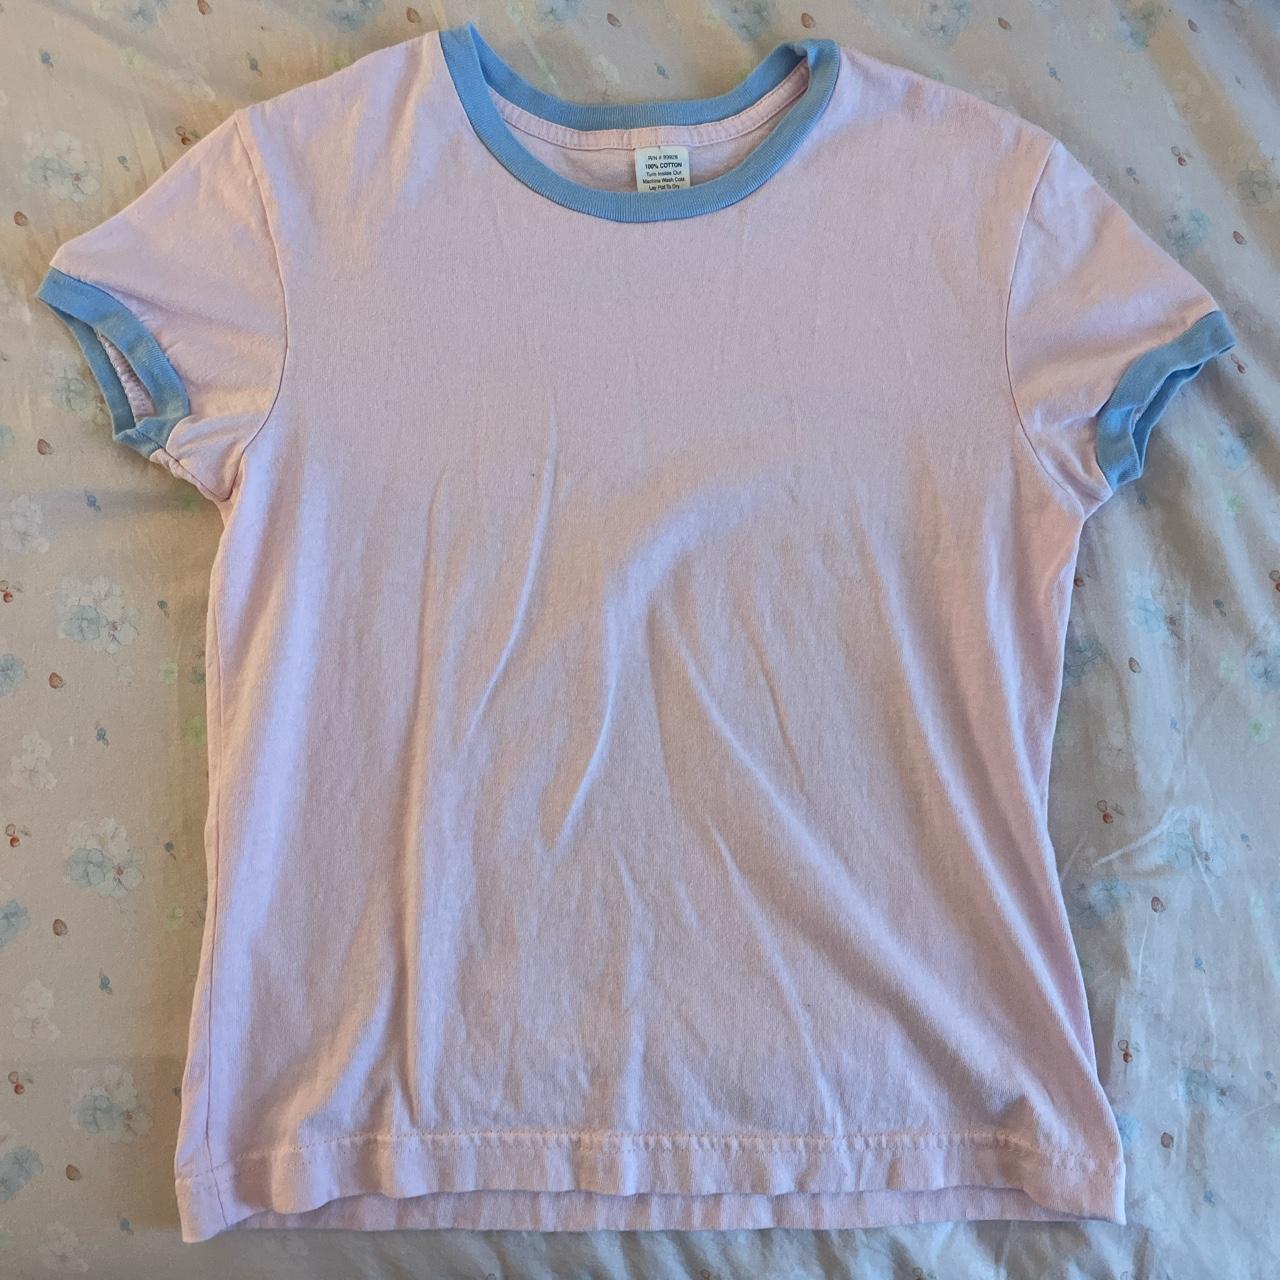 Women's Pink and Blue T-shirt | Depop